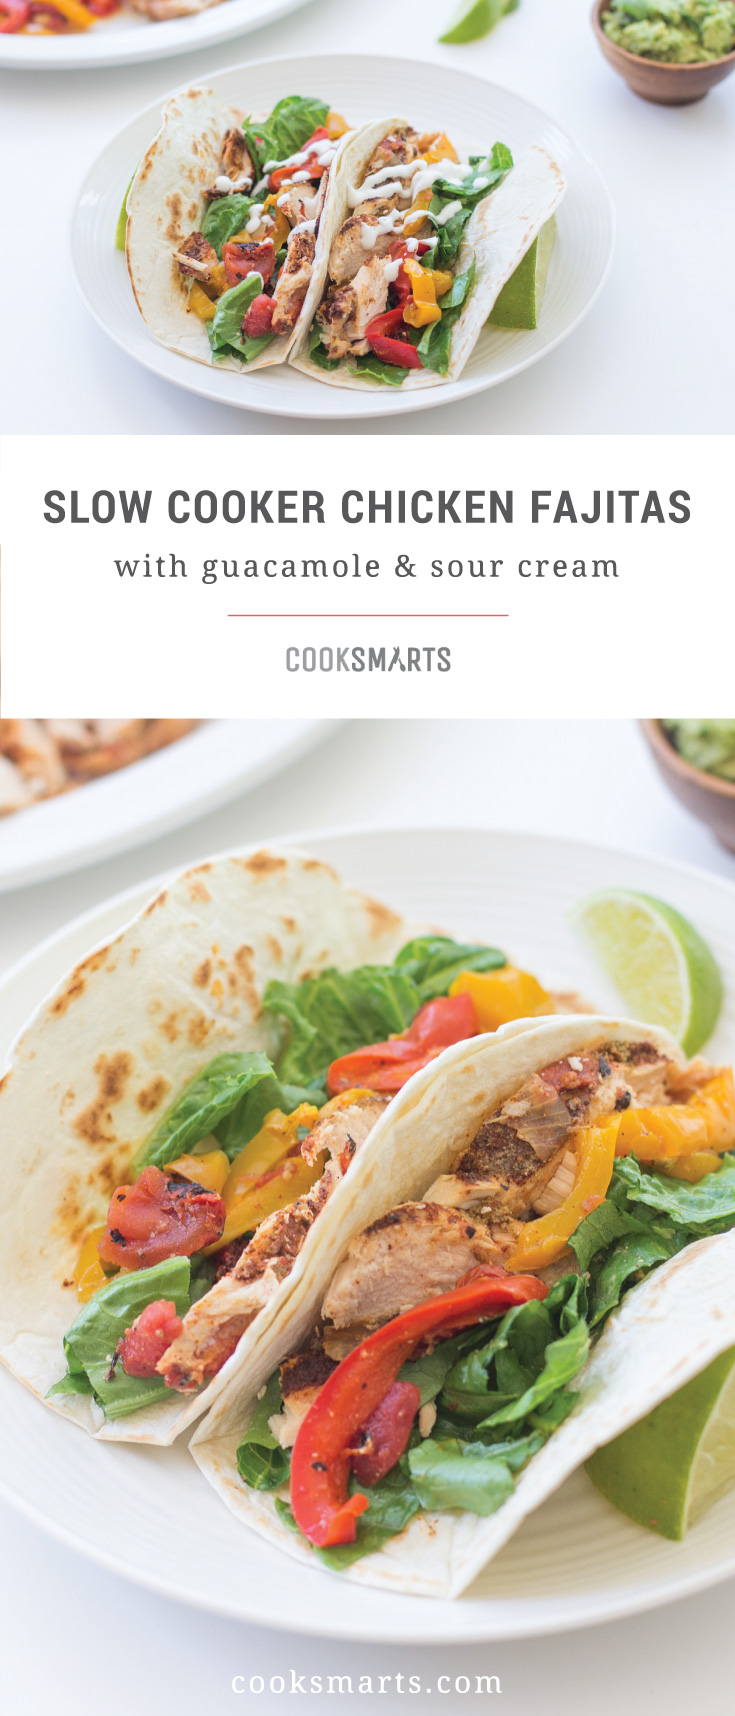 Cook Smarts Recipe: Slow Cooker Chicken Fajitas